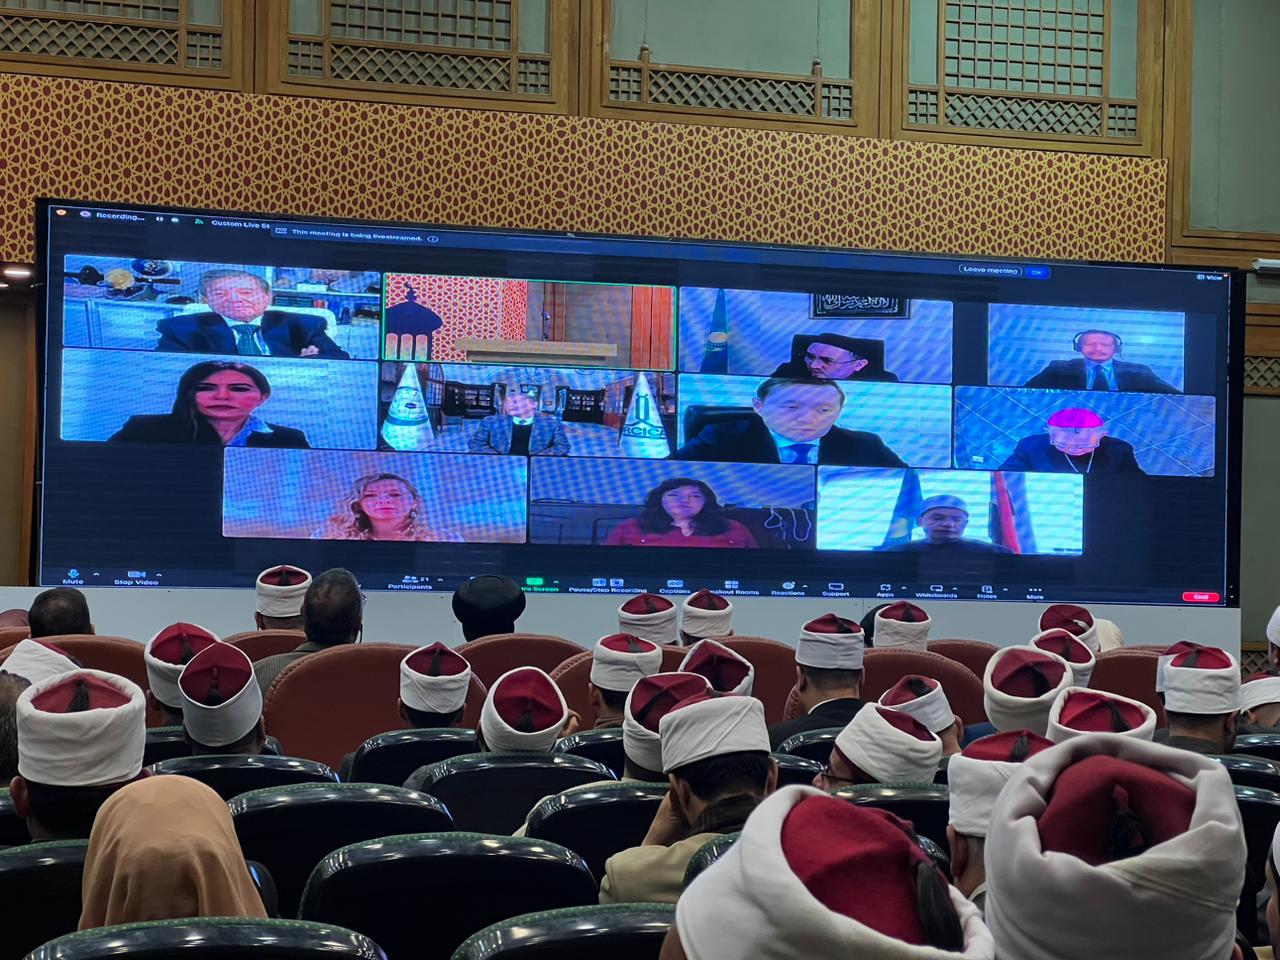 انطلاق الجلسة الحوارية الدولية "أهمية حوار الأديان والحضارات" لمجمع البحوث و مركز نور سلطان